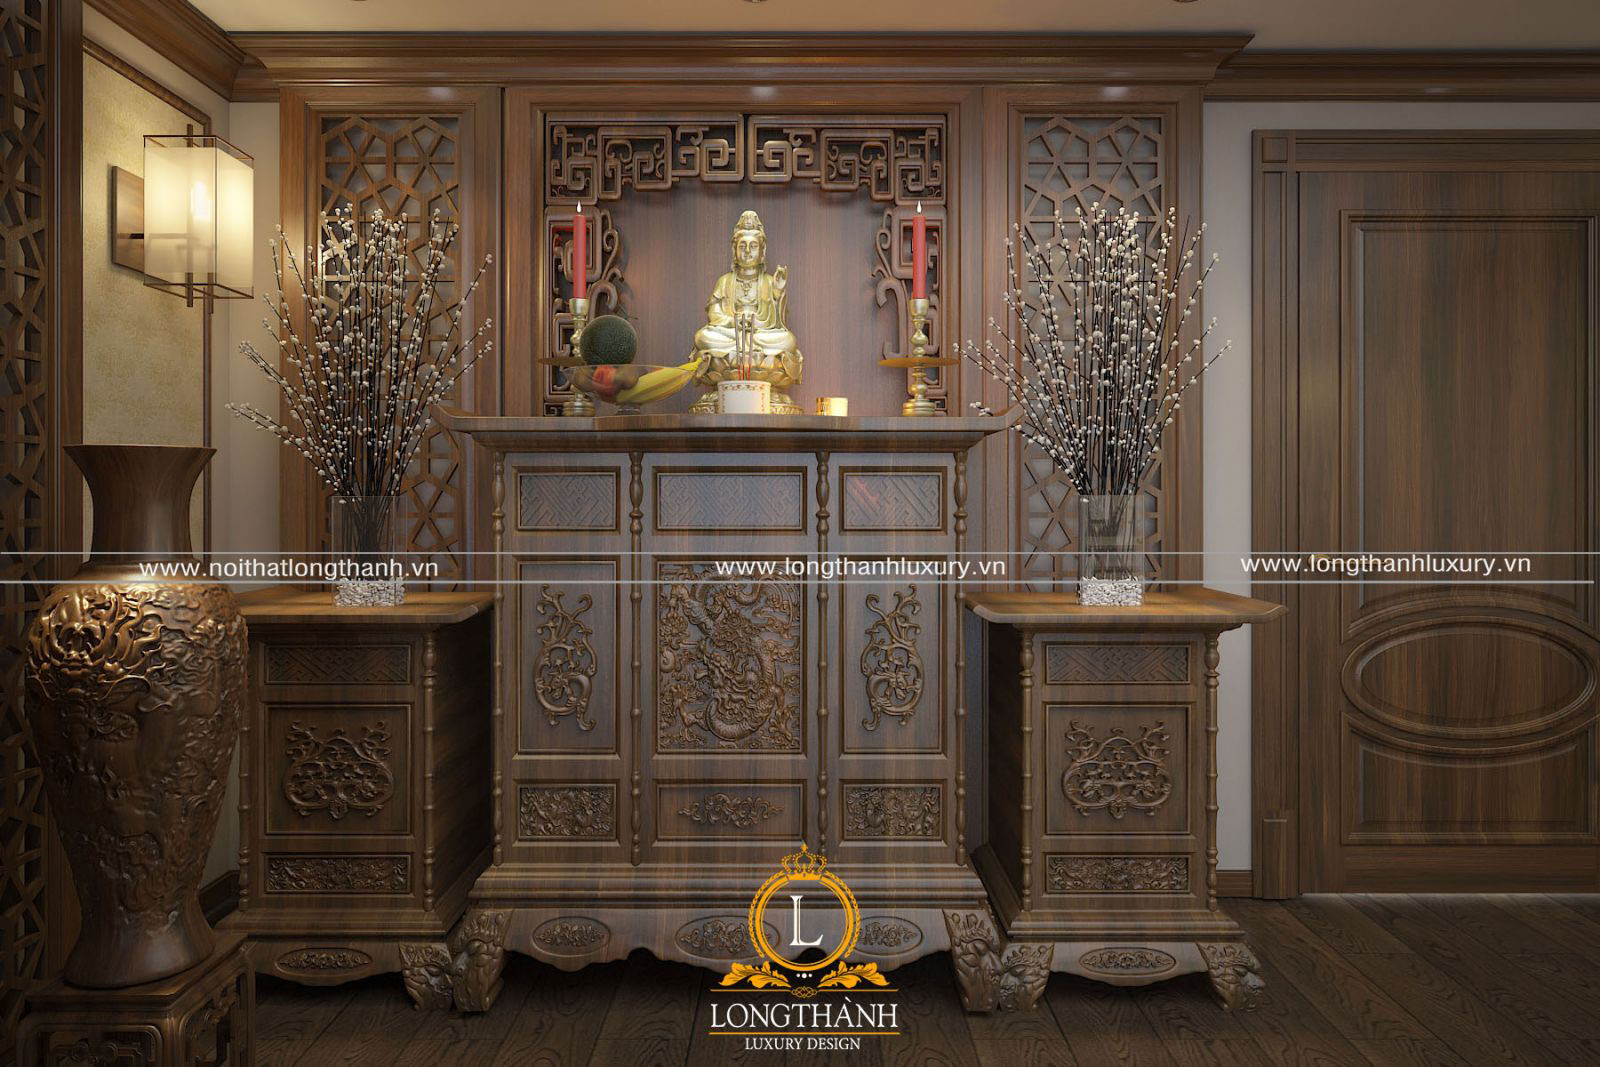 Thiết kế bàn thờ phật phong cách tân cổ điển sang trọng